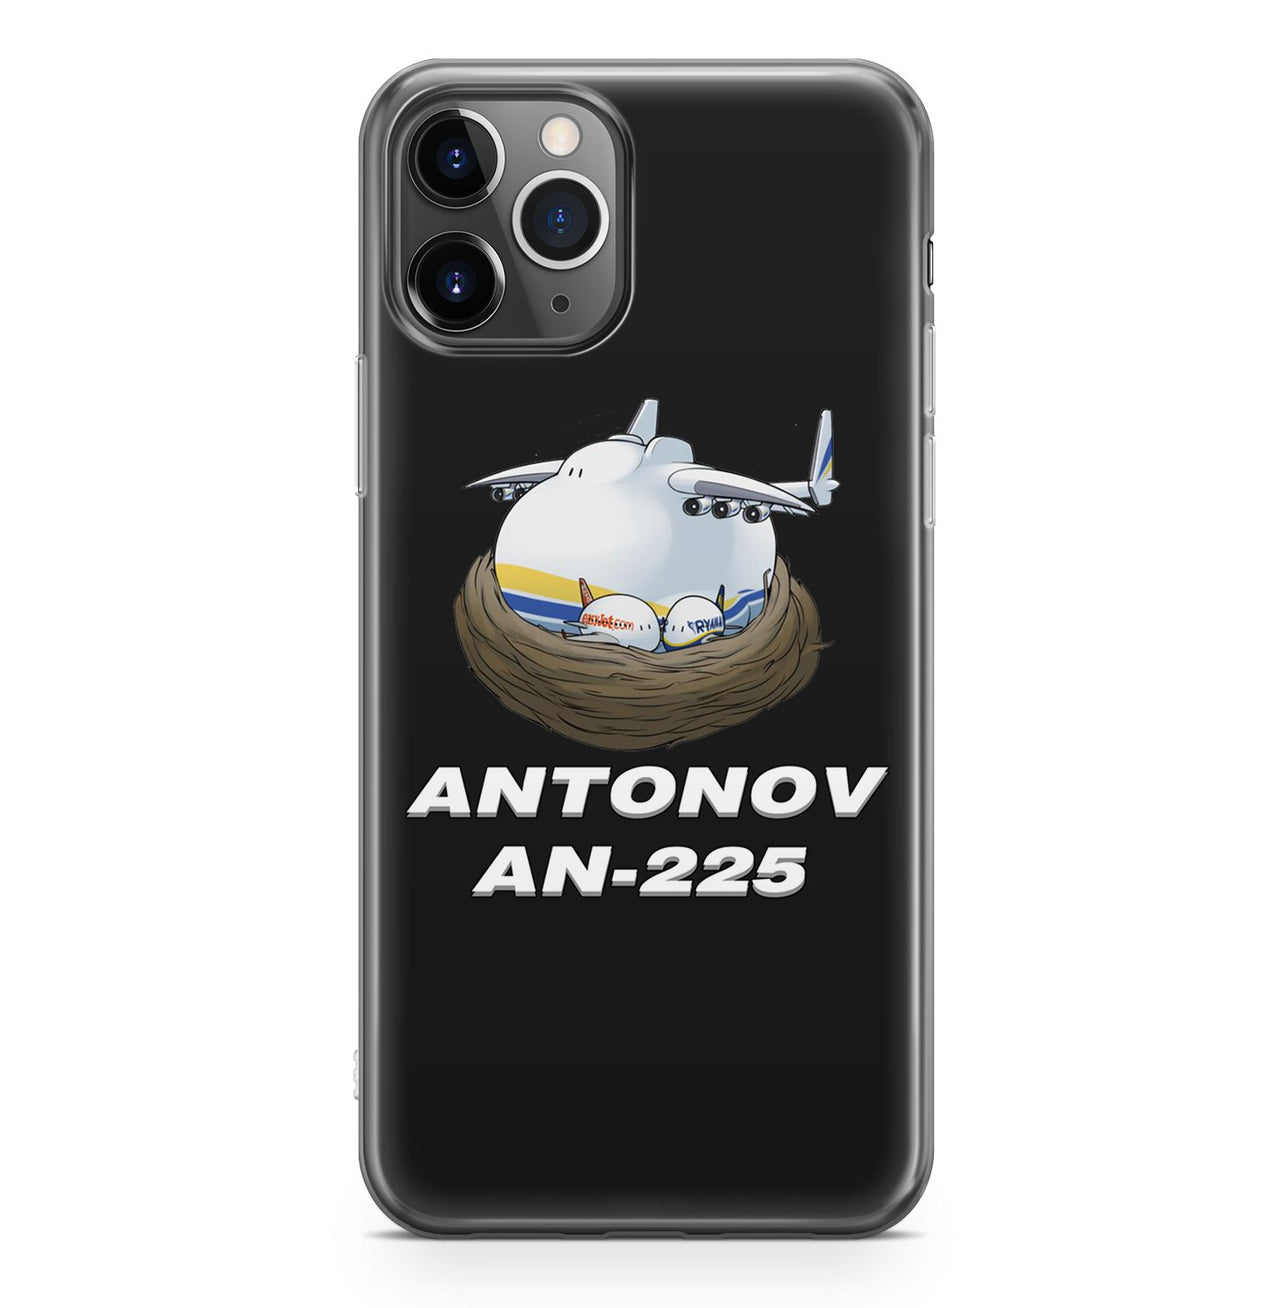 Antonov AN-225 (22) Designed iPhone Cases